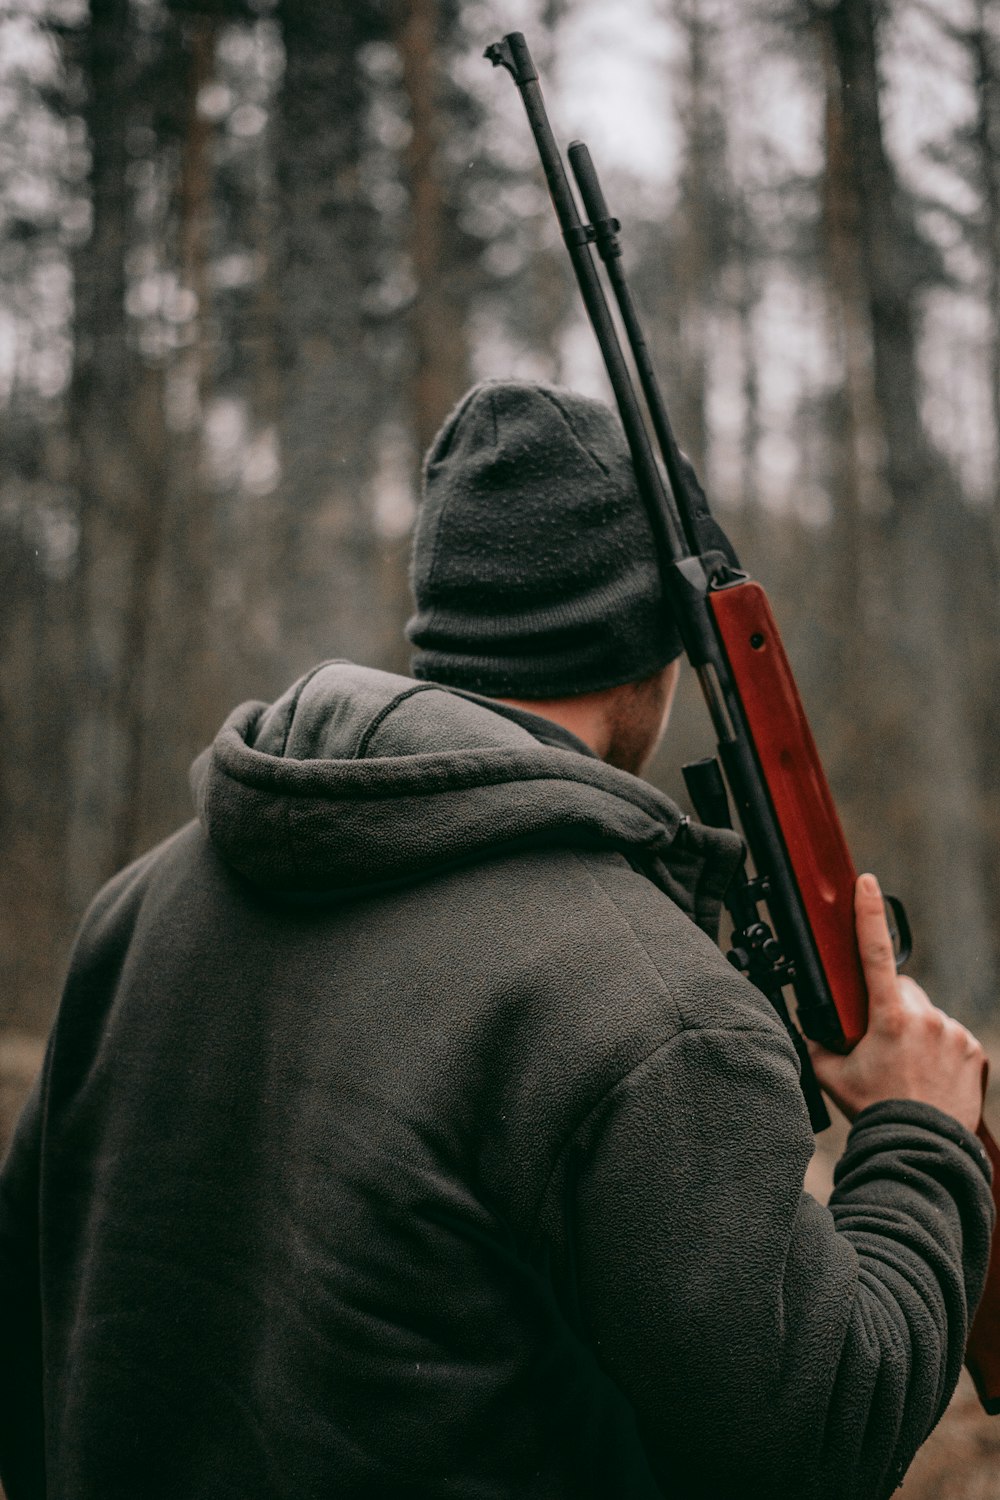 Mann mit braunem und schwarzem Scharfschützengewehr in Flachfokusfotografie